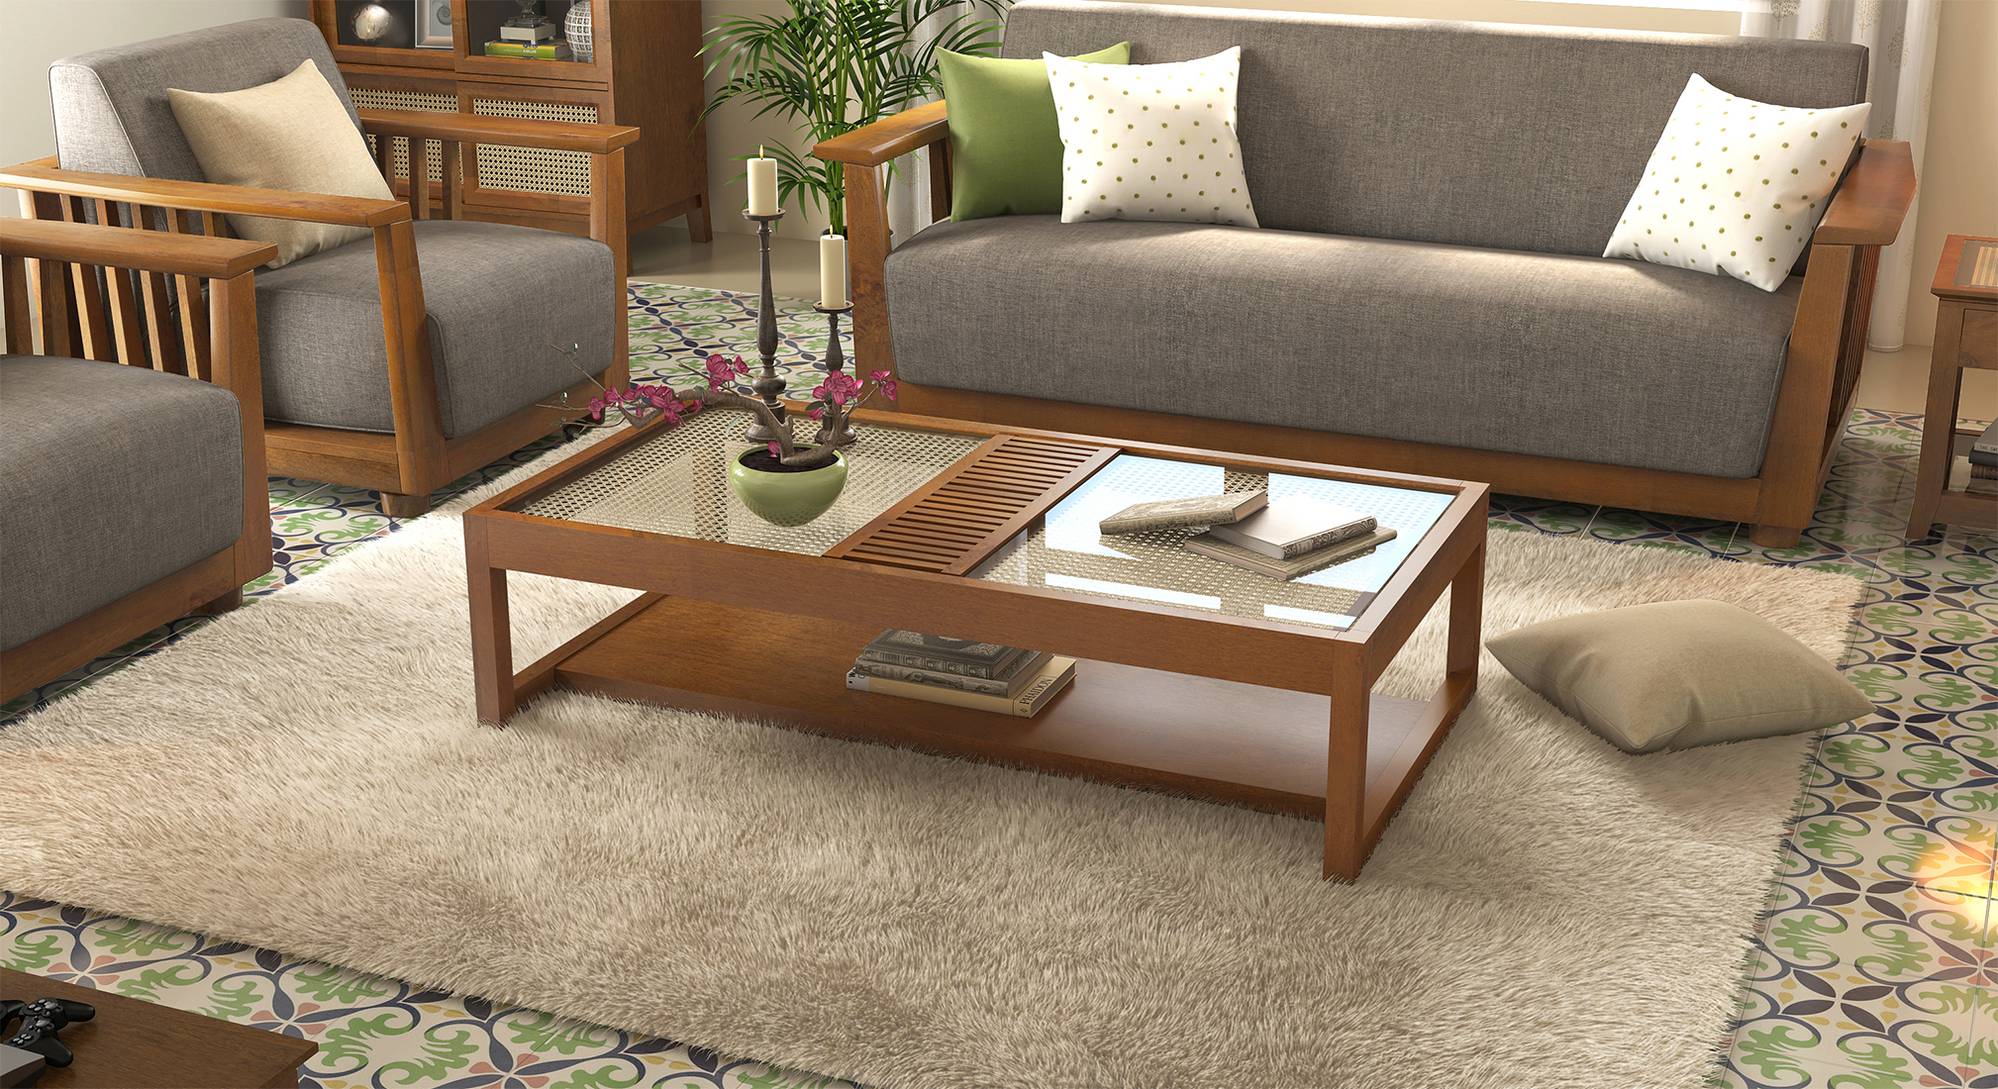 sets of living room furniture